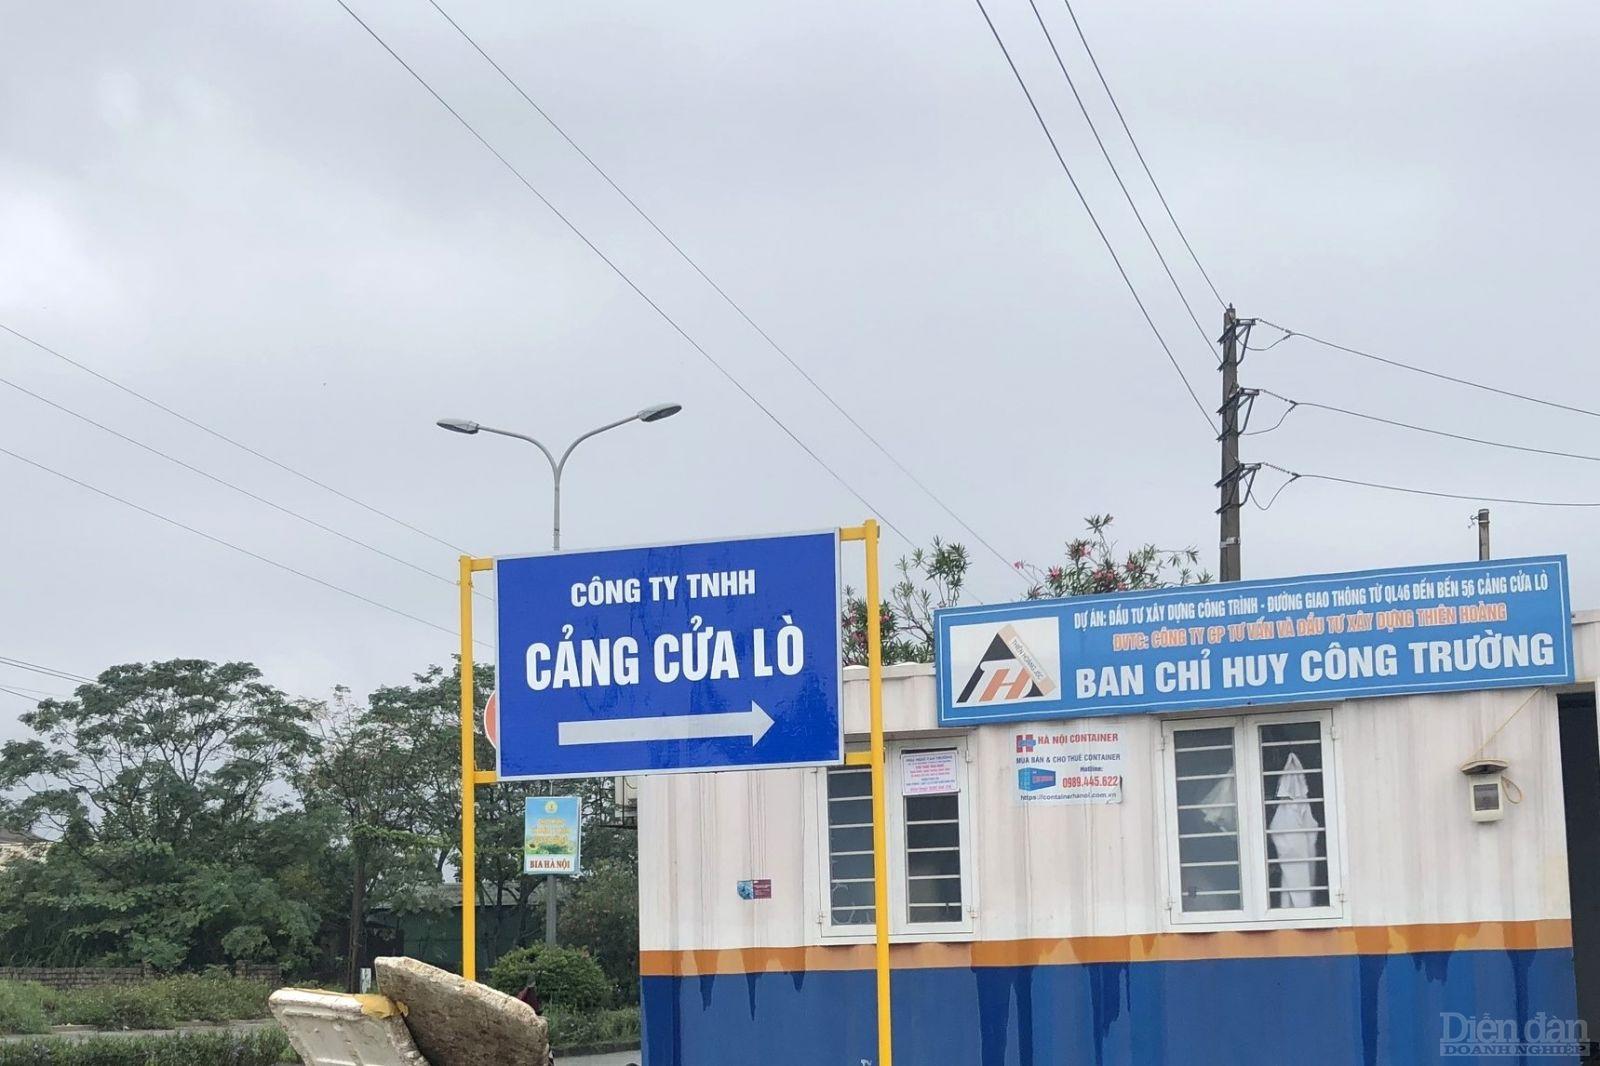 UBND tỉnh Nghệ An ban hành quyết định xử phạt hành chính đối với Công ty TNHH Cảng Cửa Lò do đưa hạng mục công trình vào sử dụng, hoạt động khi chưa có văn bản chấp thuận kết quả nghiệm thu về PCCC